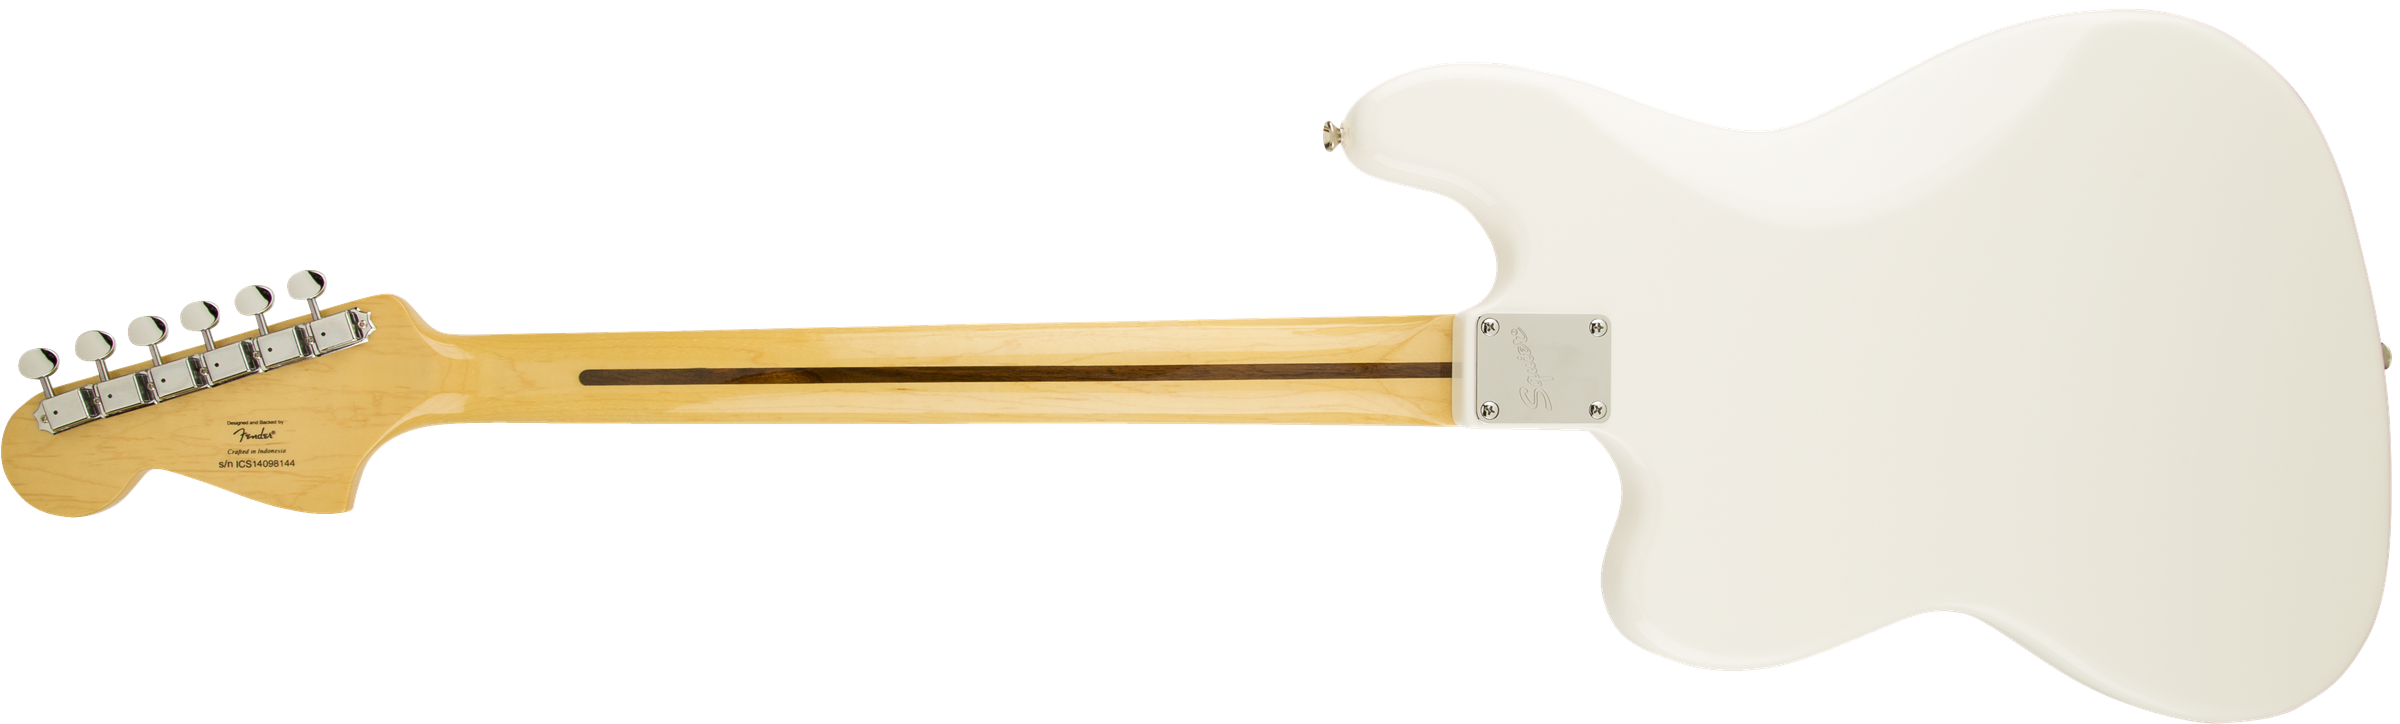 Squier Bass Vi Vintage Modified (rw) - Olympic White - Bajo eléctrico de cuerpo sólido - Variation 1